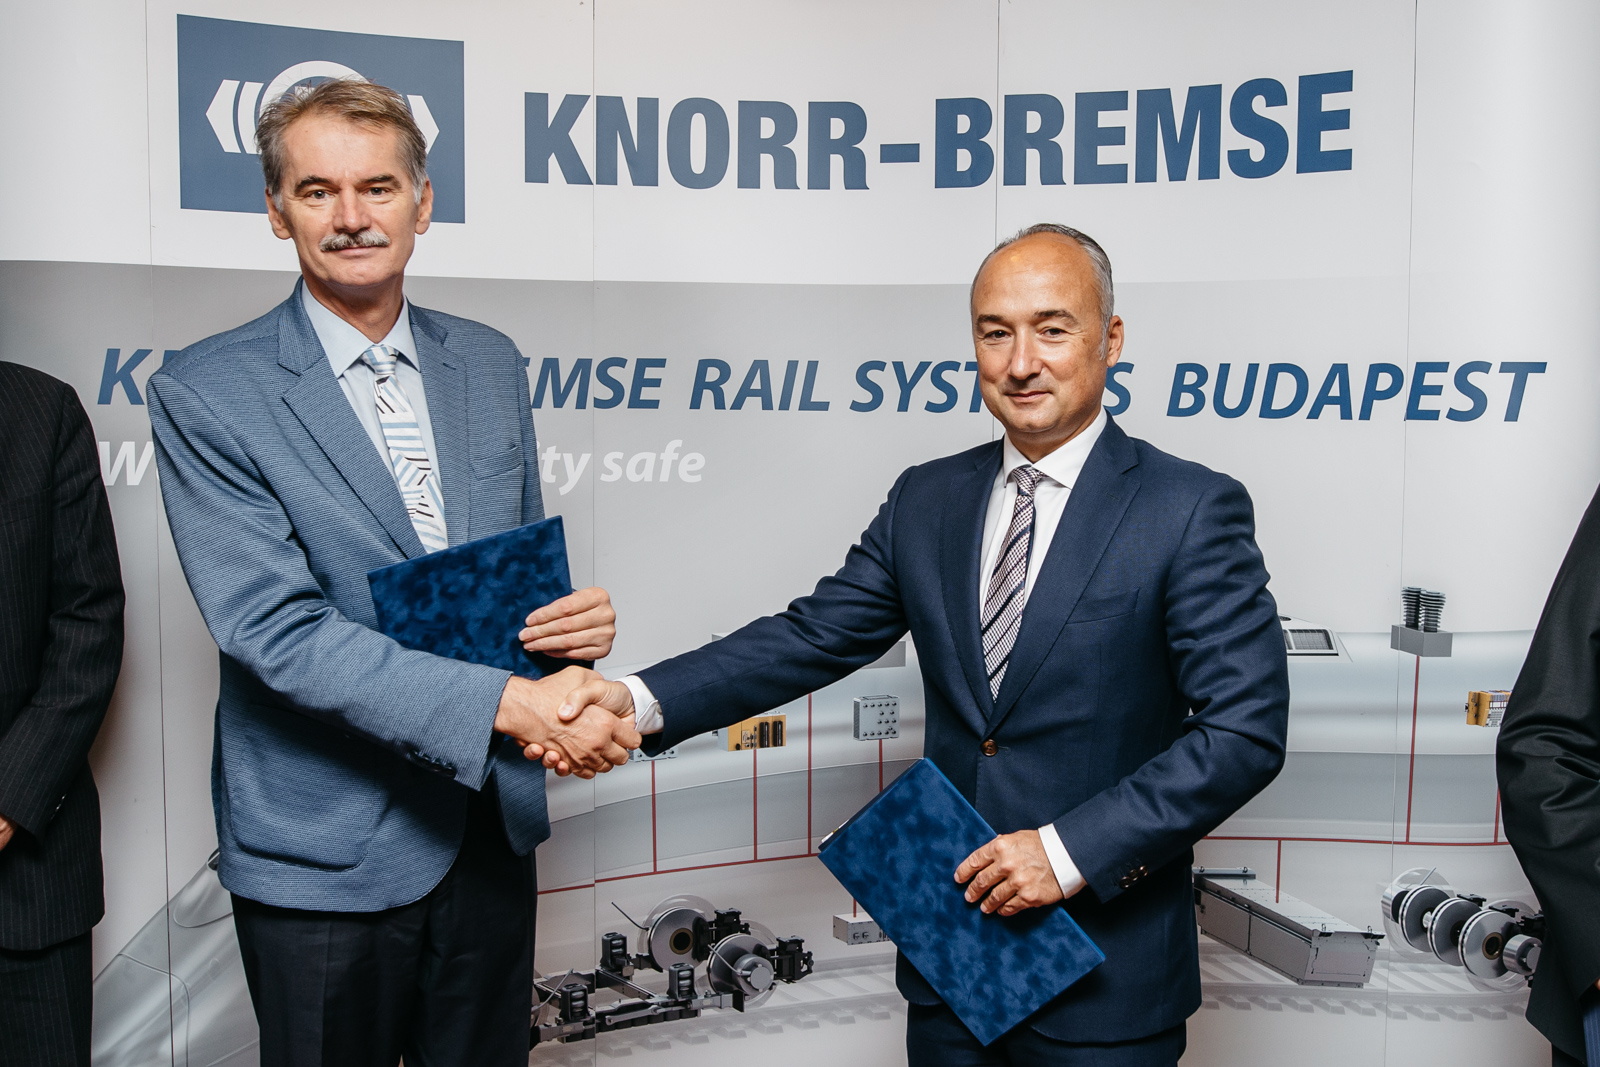 Közösen fejleszthetnek vasúti vezetéstámogató rendszereket a BME kutatói és a Knorr-Bremse mérnökei